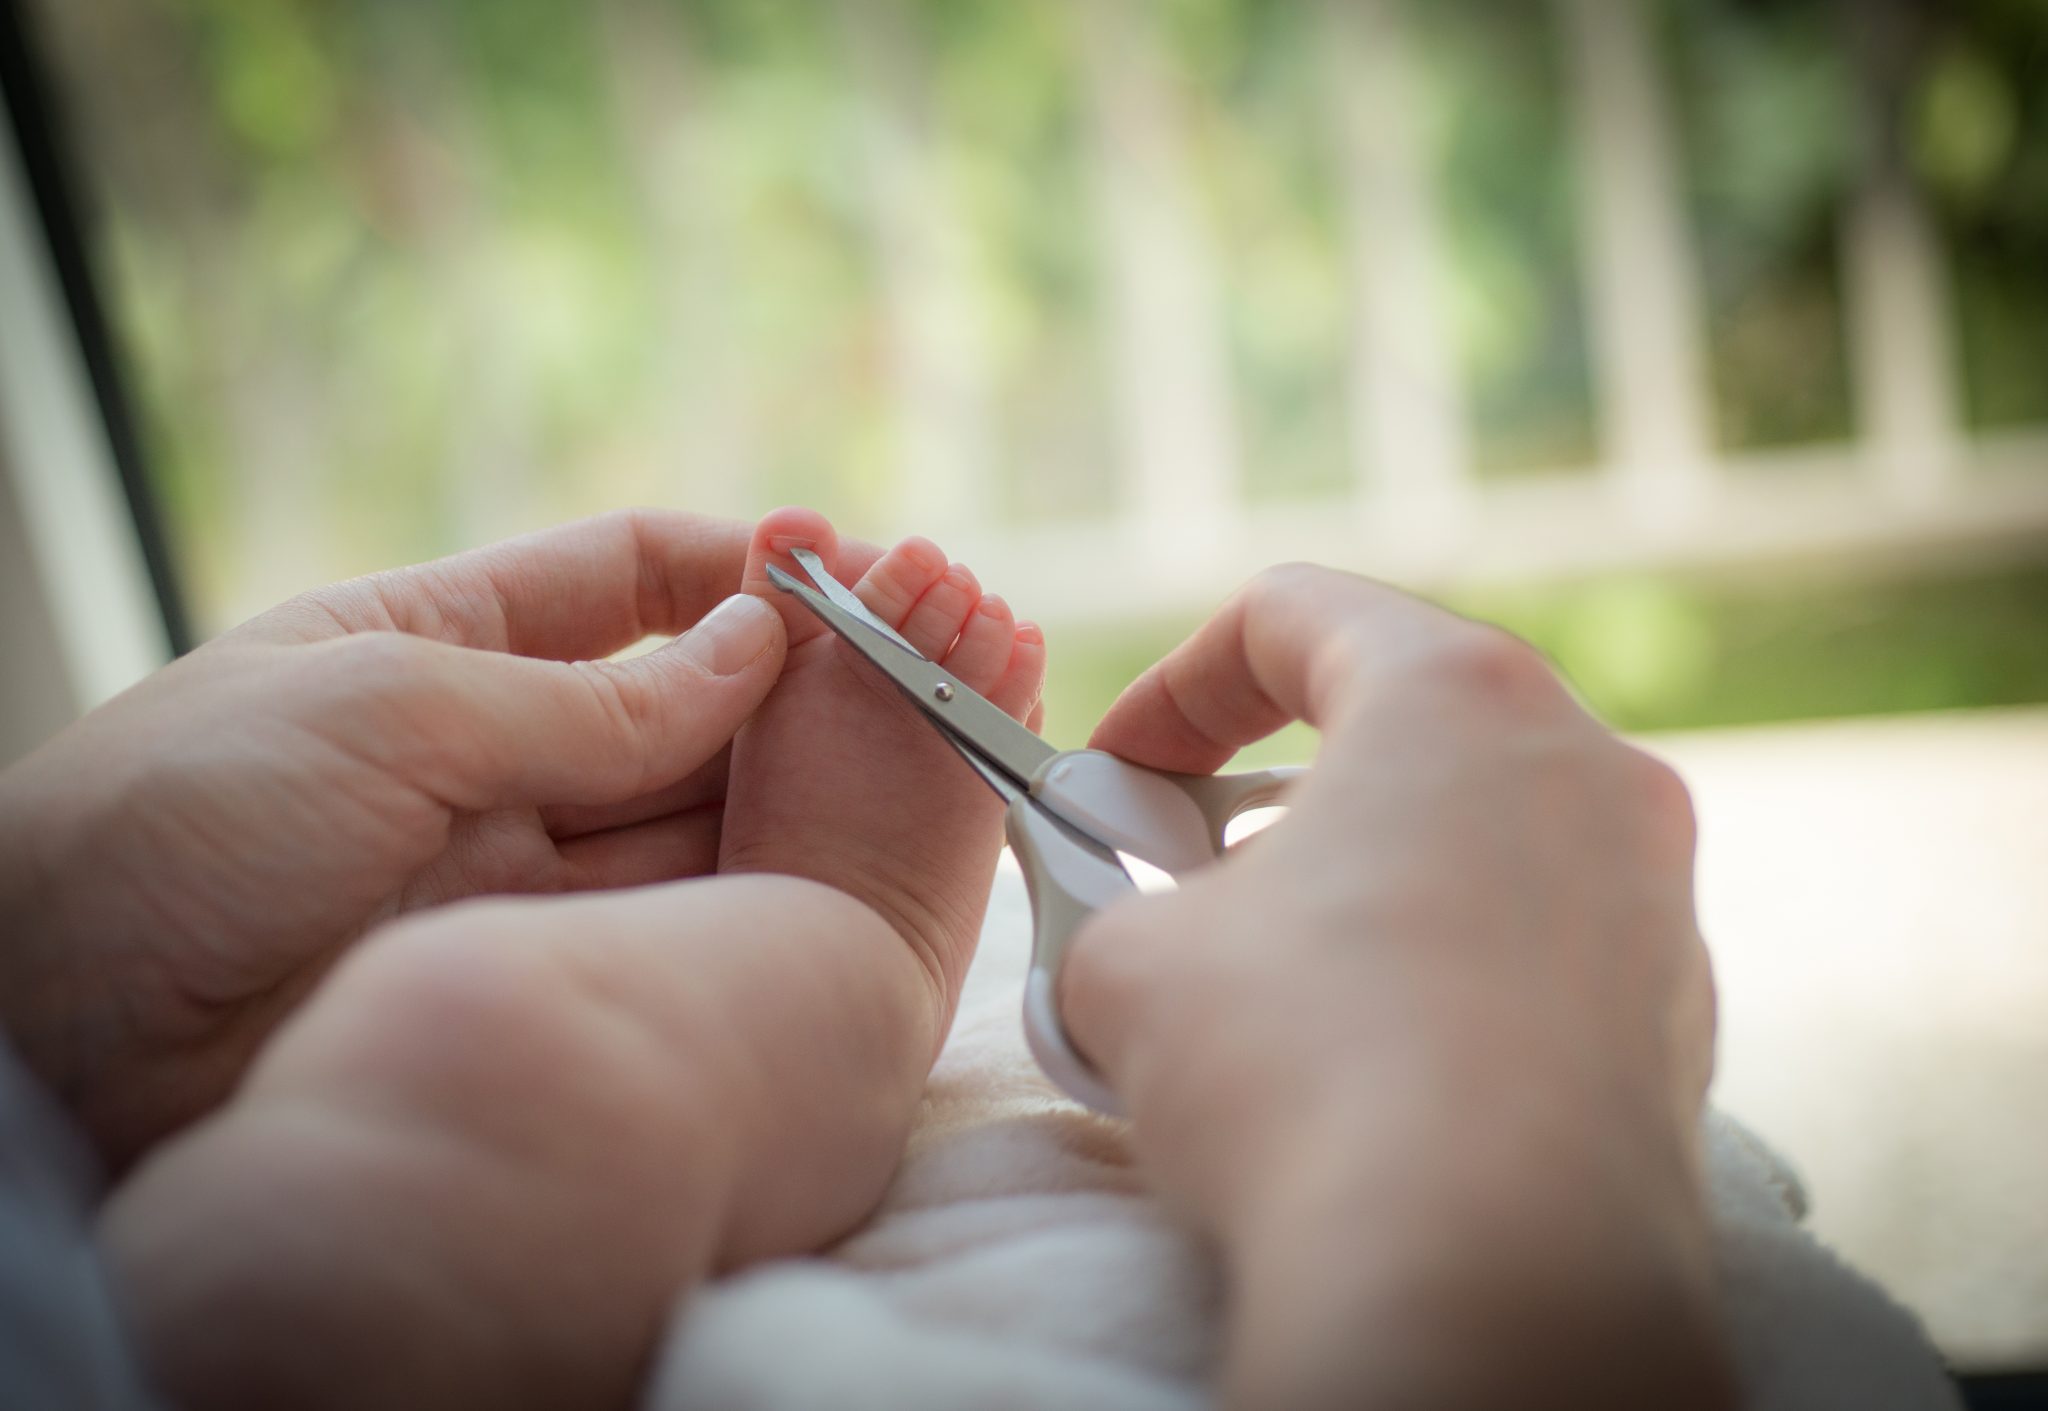 Как правильно подстричь ногти на руках ребенка